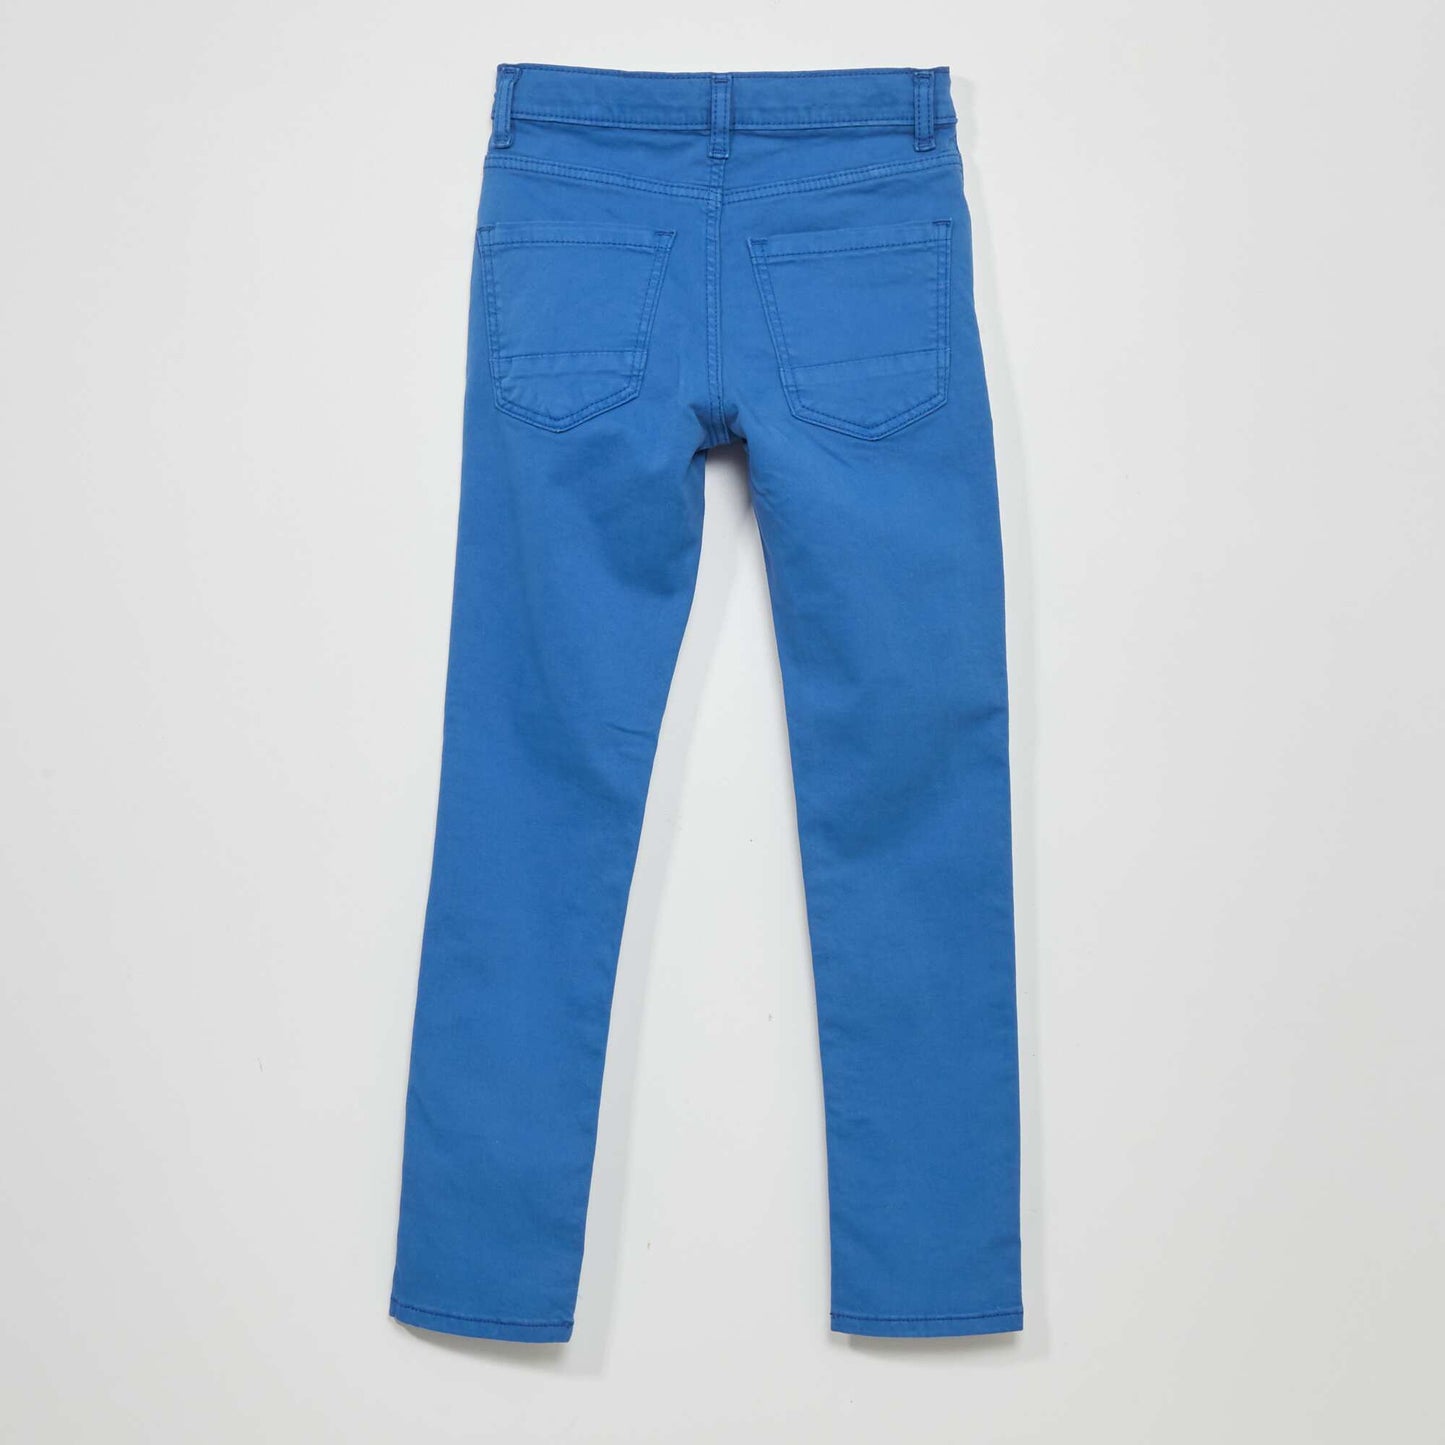 Jean skinny 5 poches Bleu